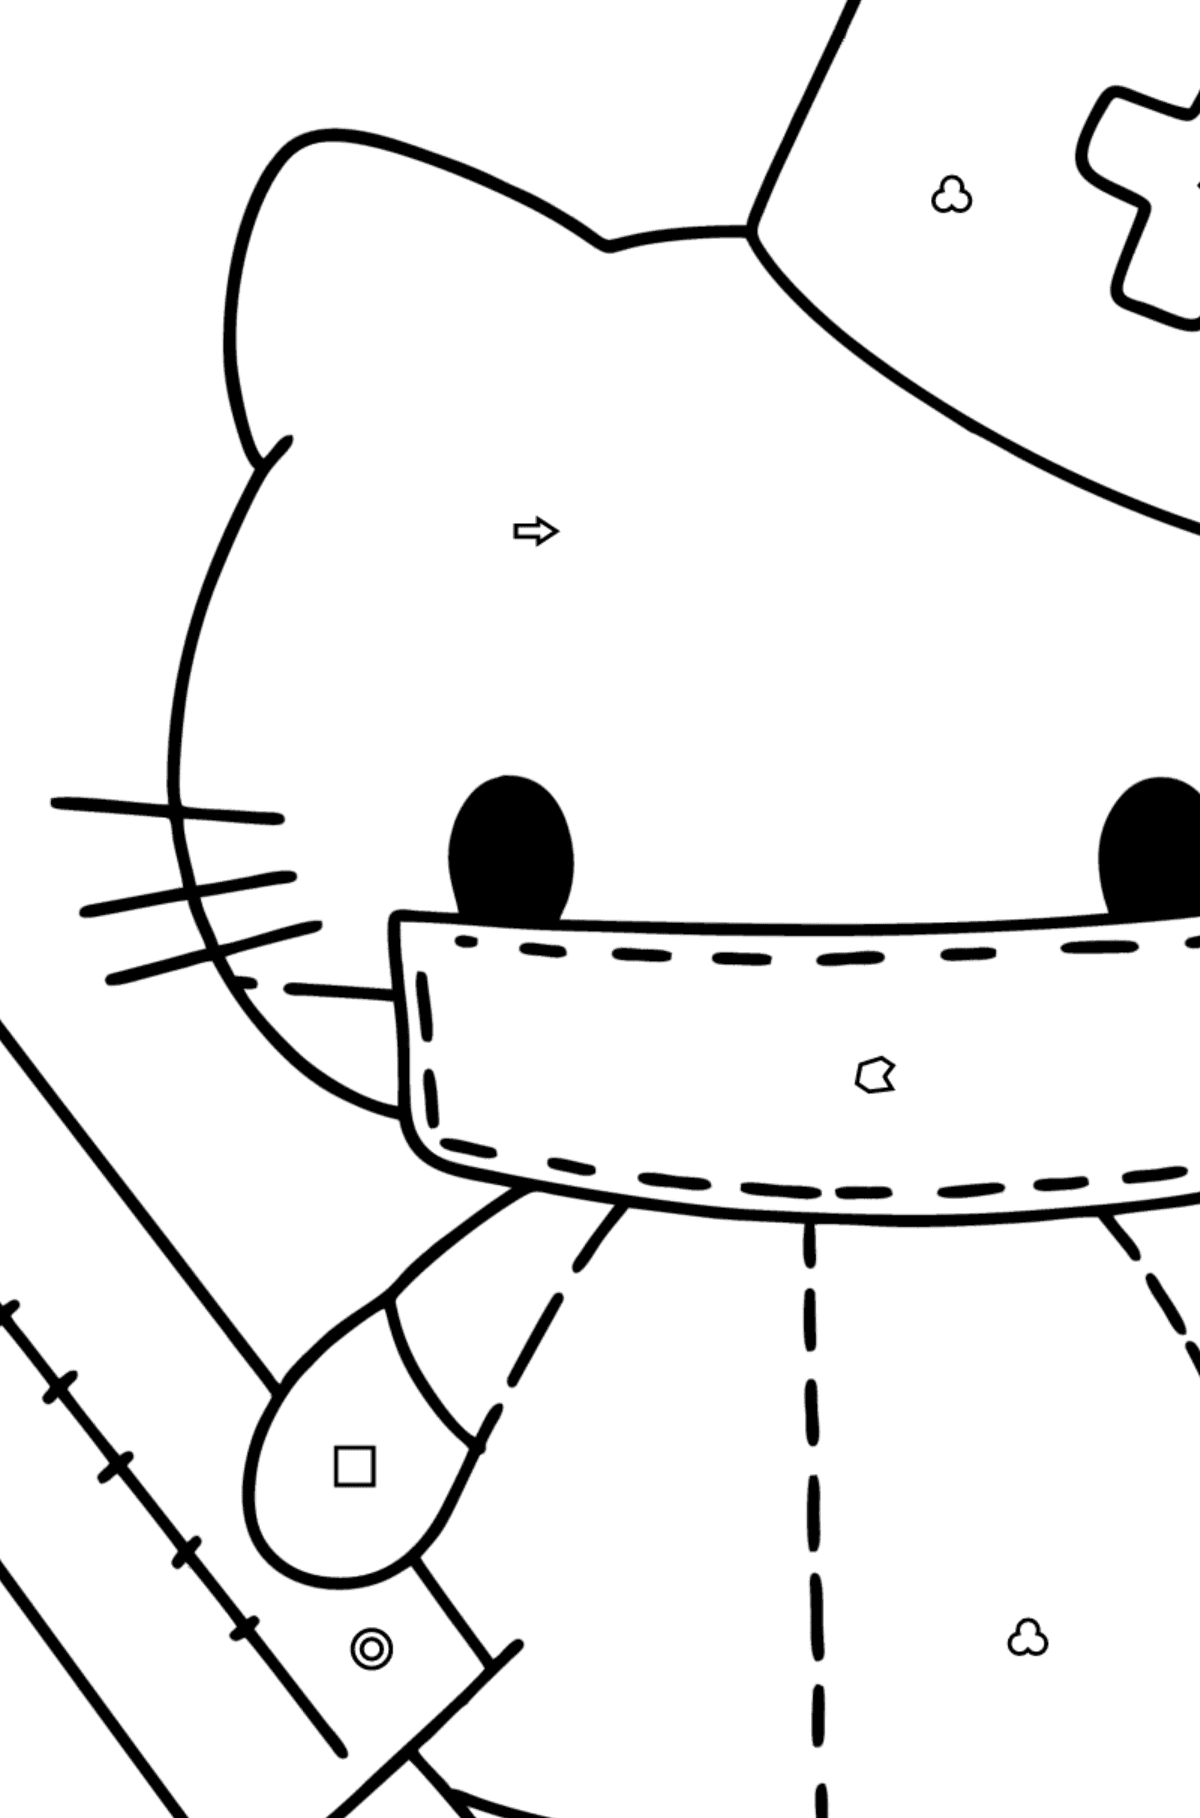 Boyama sayfası Hello Kitty hemşire - Geometrik Şekillerle Boyama çocuklar için